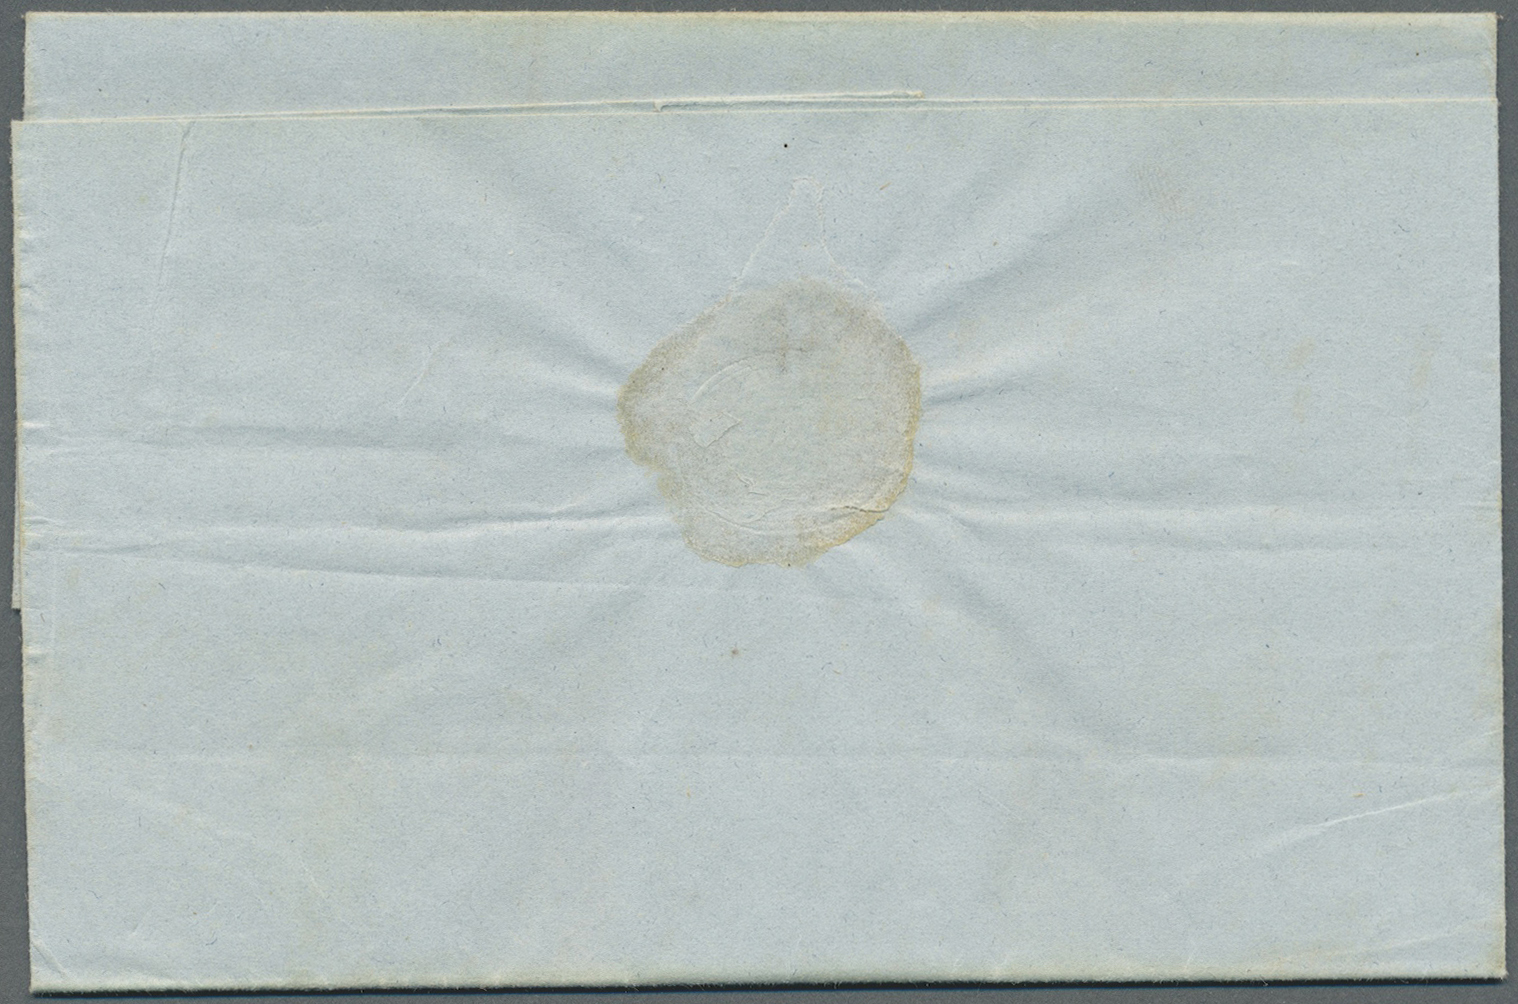 Br Ägypten - Vorphilatelie: 1839/1840/1842, Three stampless entire letters ex. the Sonnino correspondence.